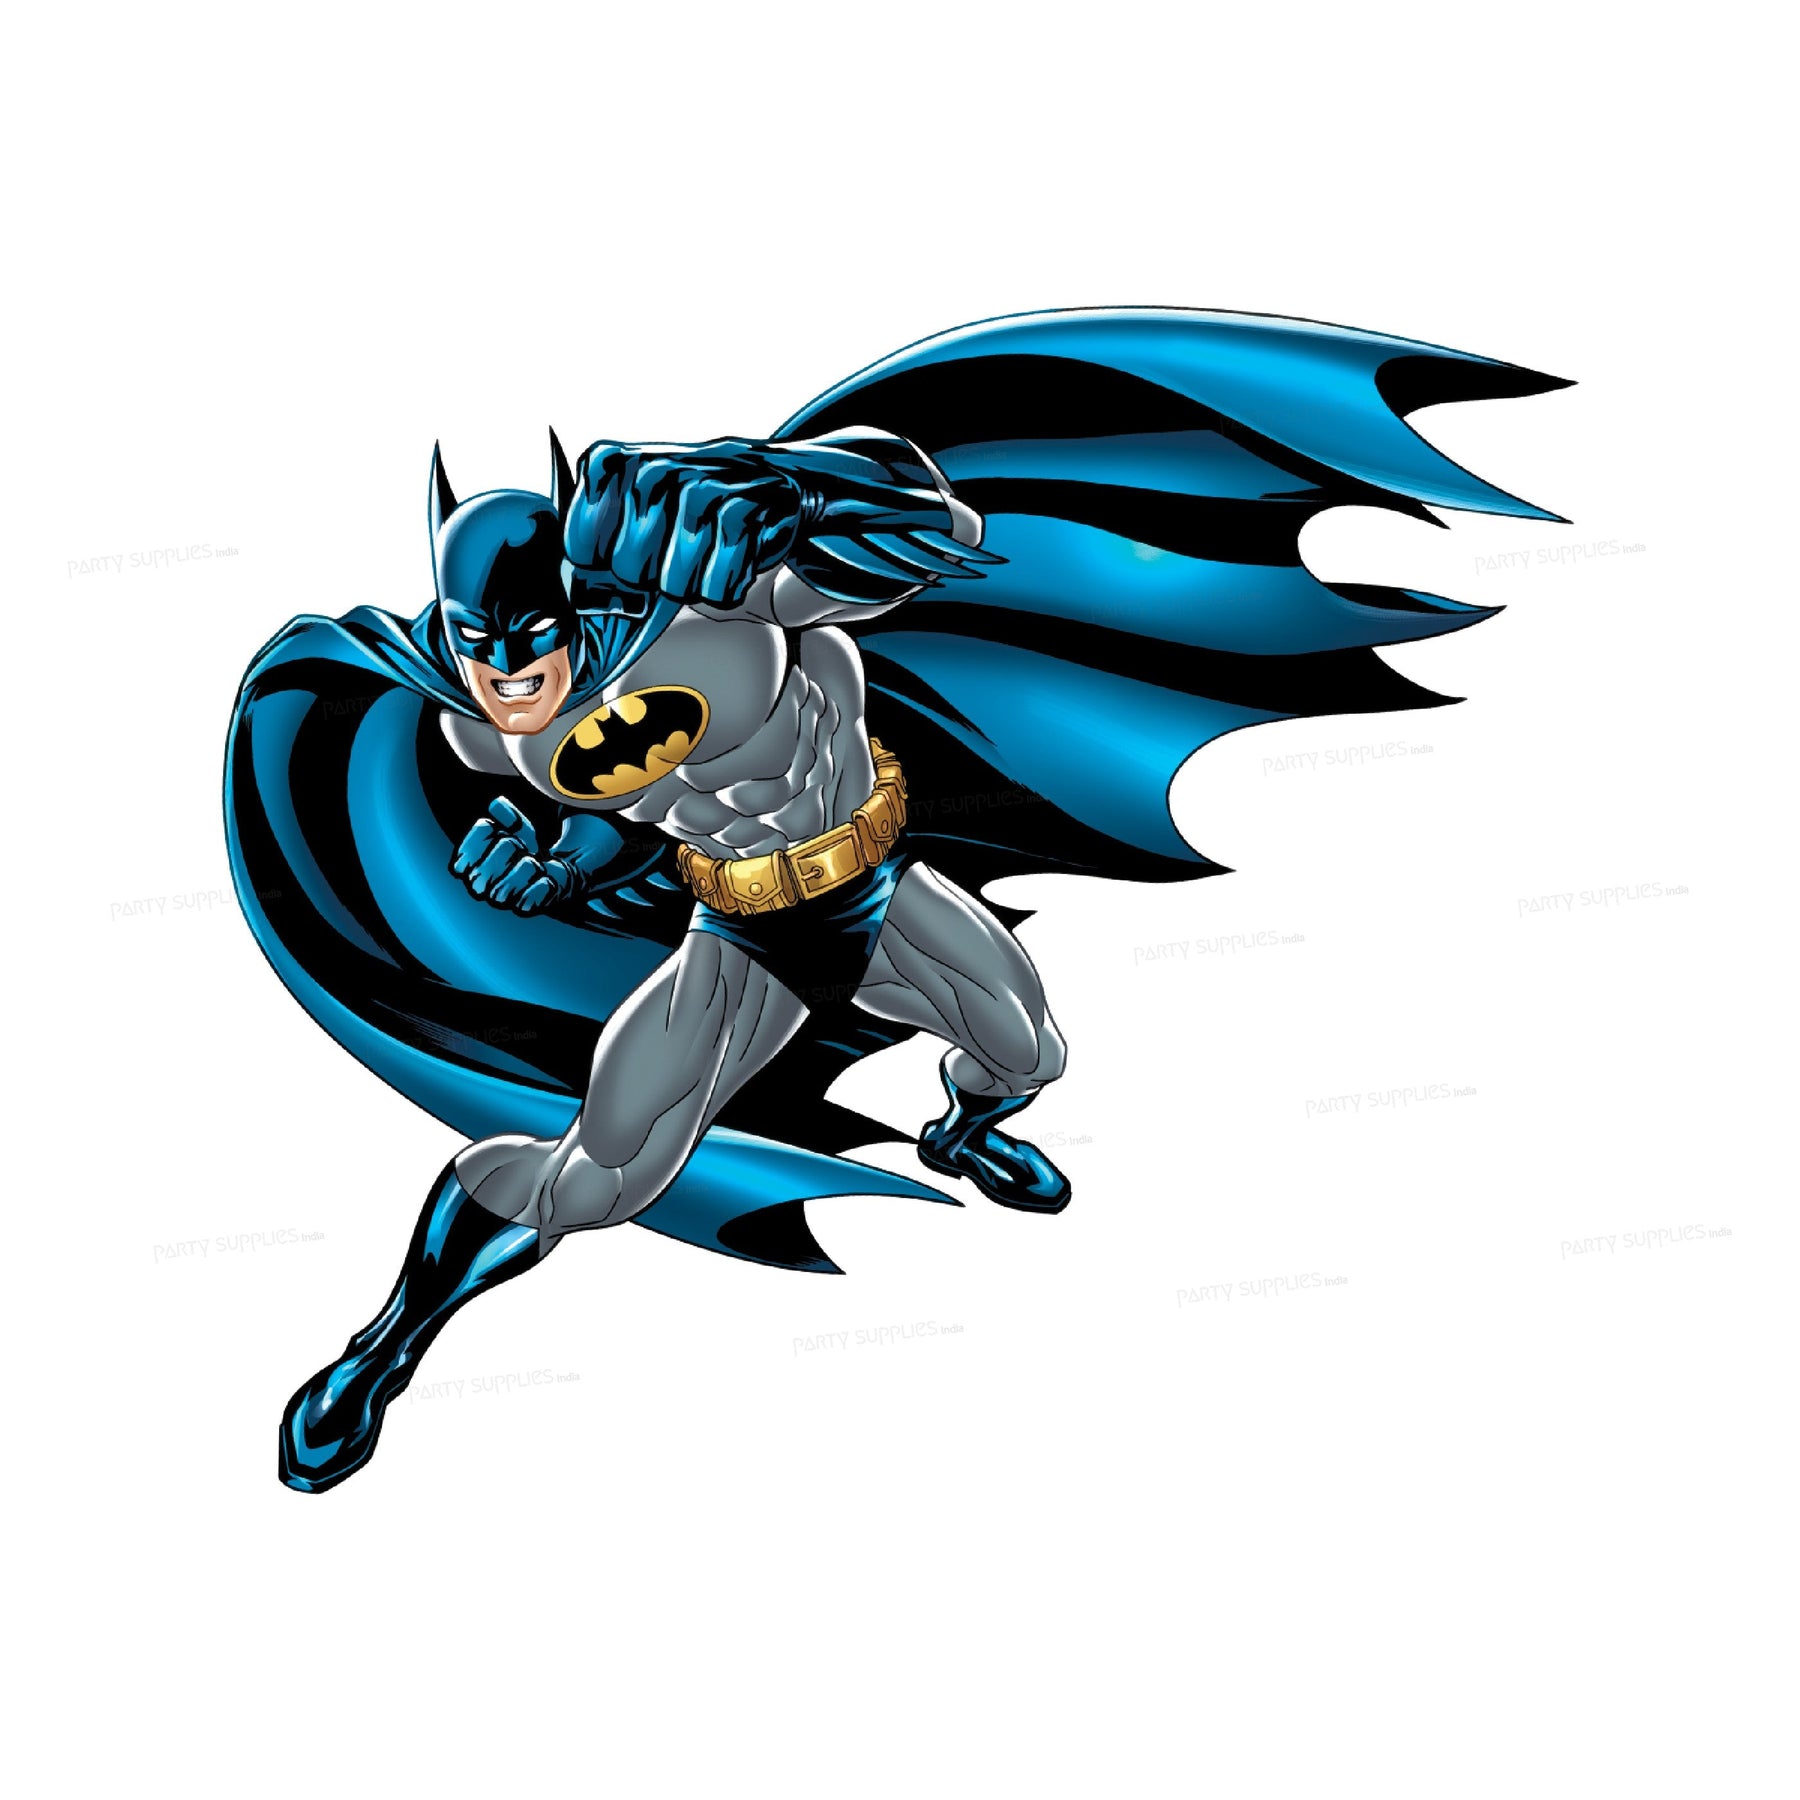 PSI Batman Theme Cutout - 01